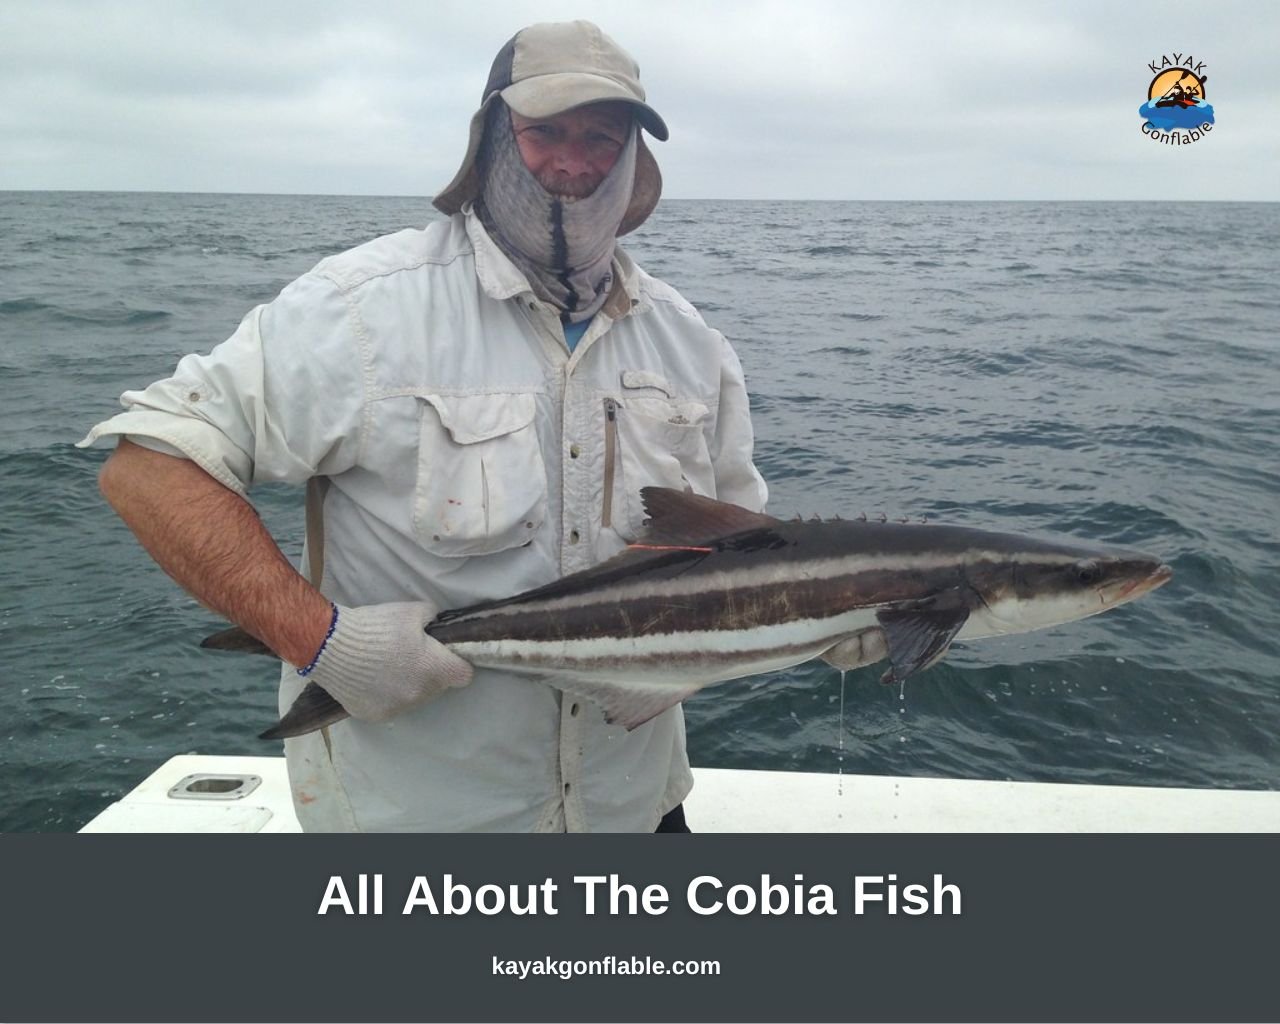 Alles über den Cobia-Fisch